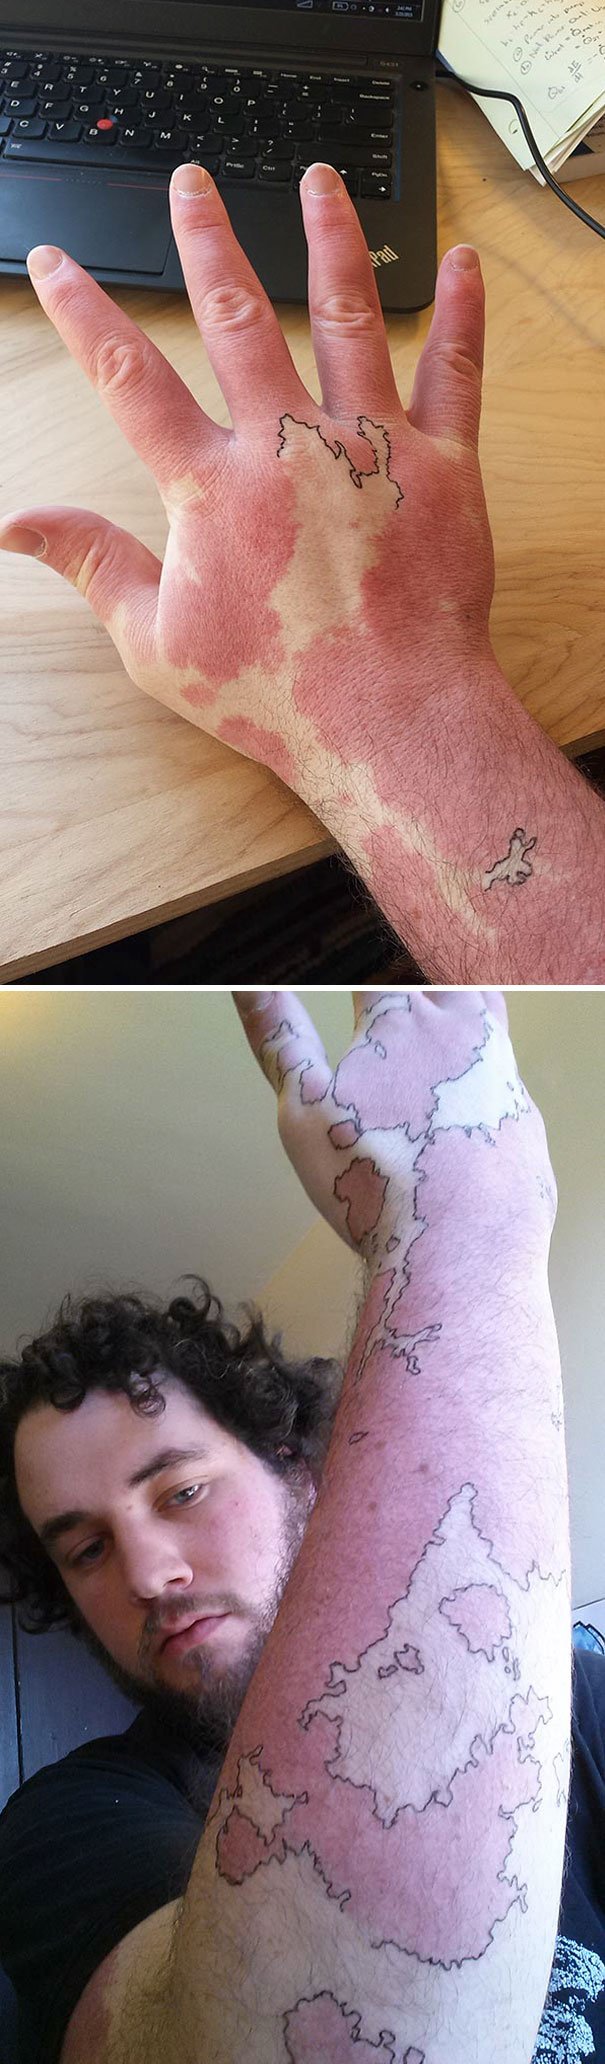 15 marcas de nascença adaptadas de forma genial com tatuagens